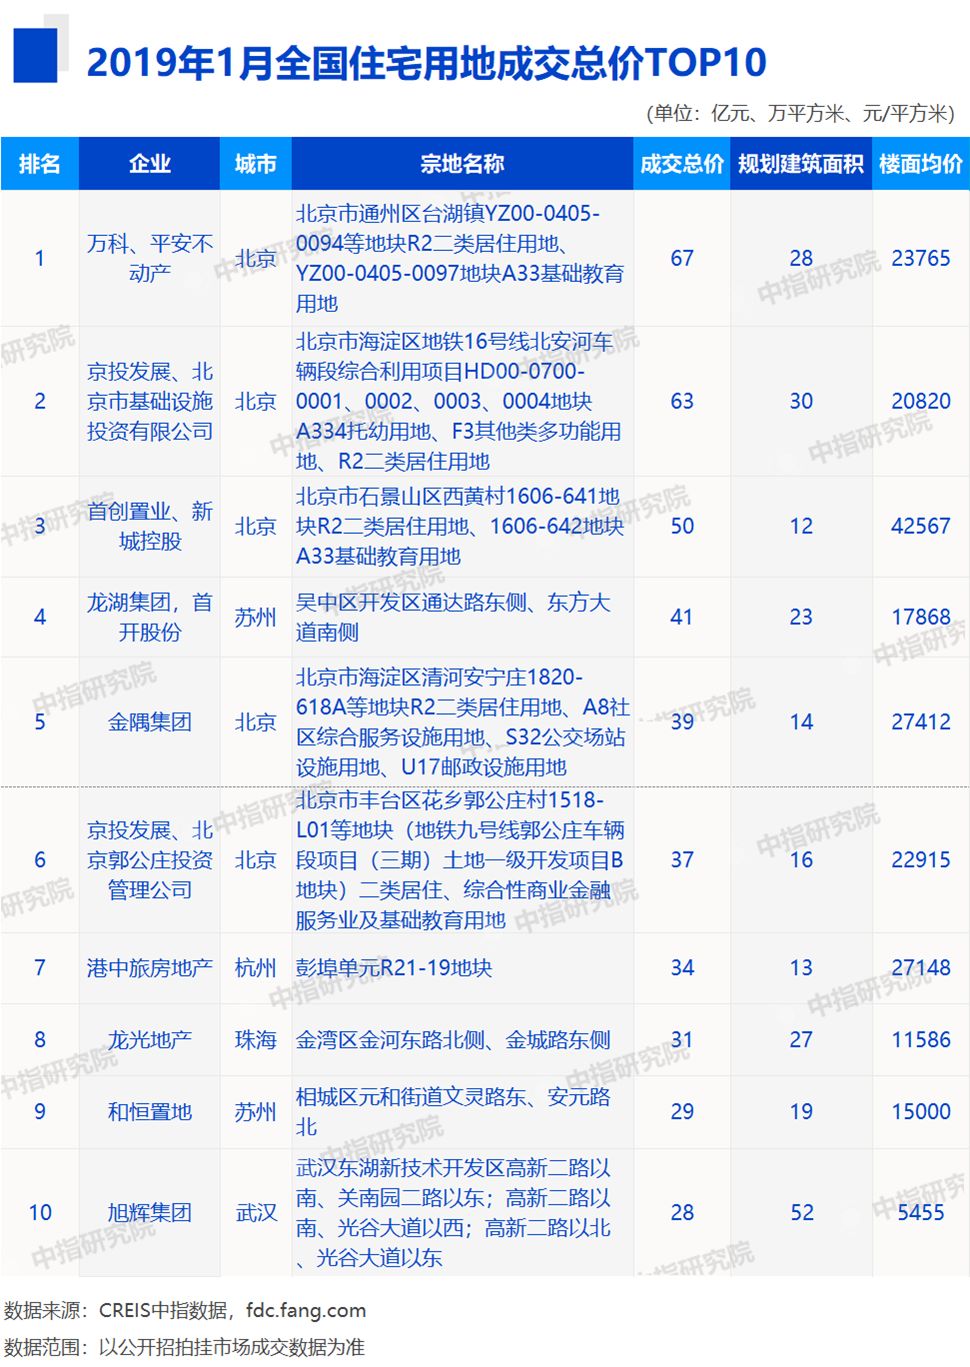 2019年房地产排行_2019年一季度中国 安徽 房地产数据榜单专业发布